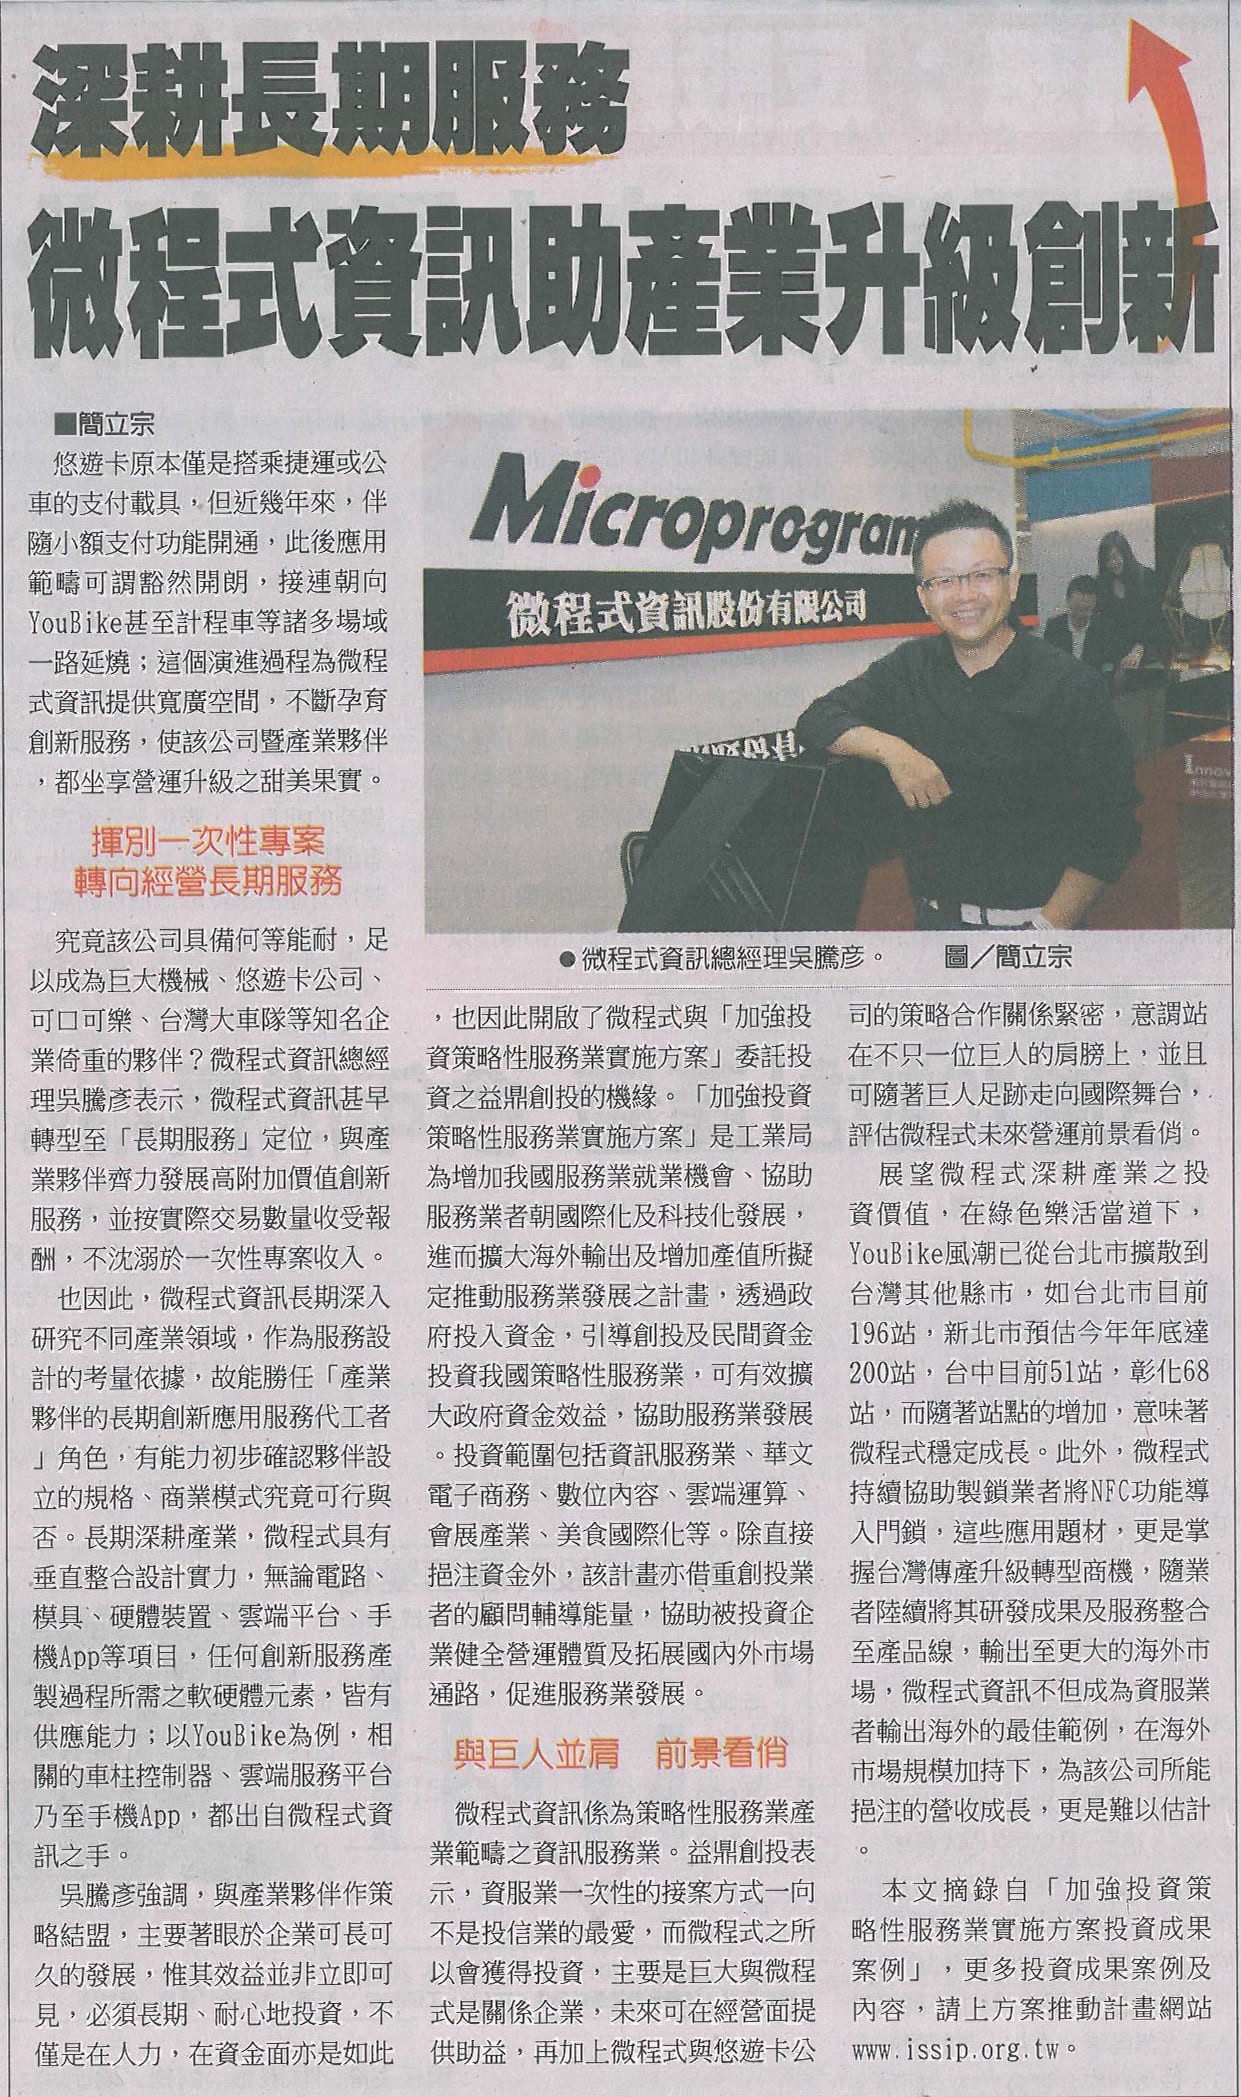 微程式資訊助產業升級創新 圖為微程式總經理吳騰彥